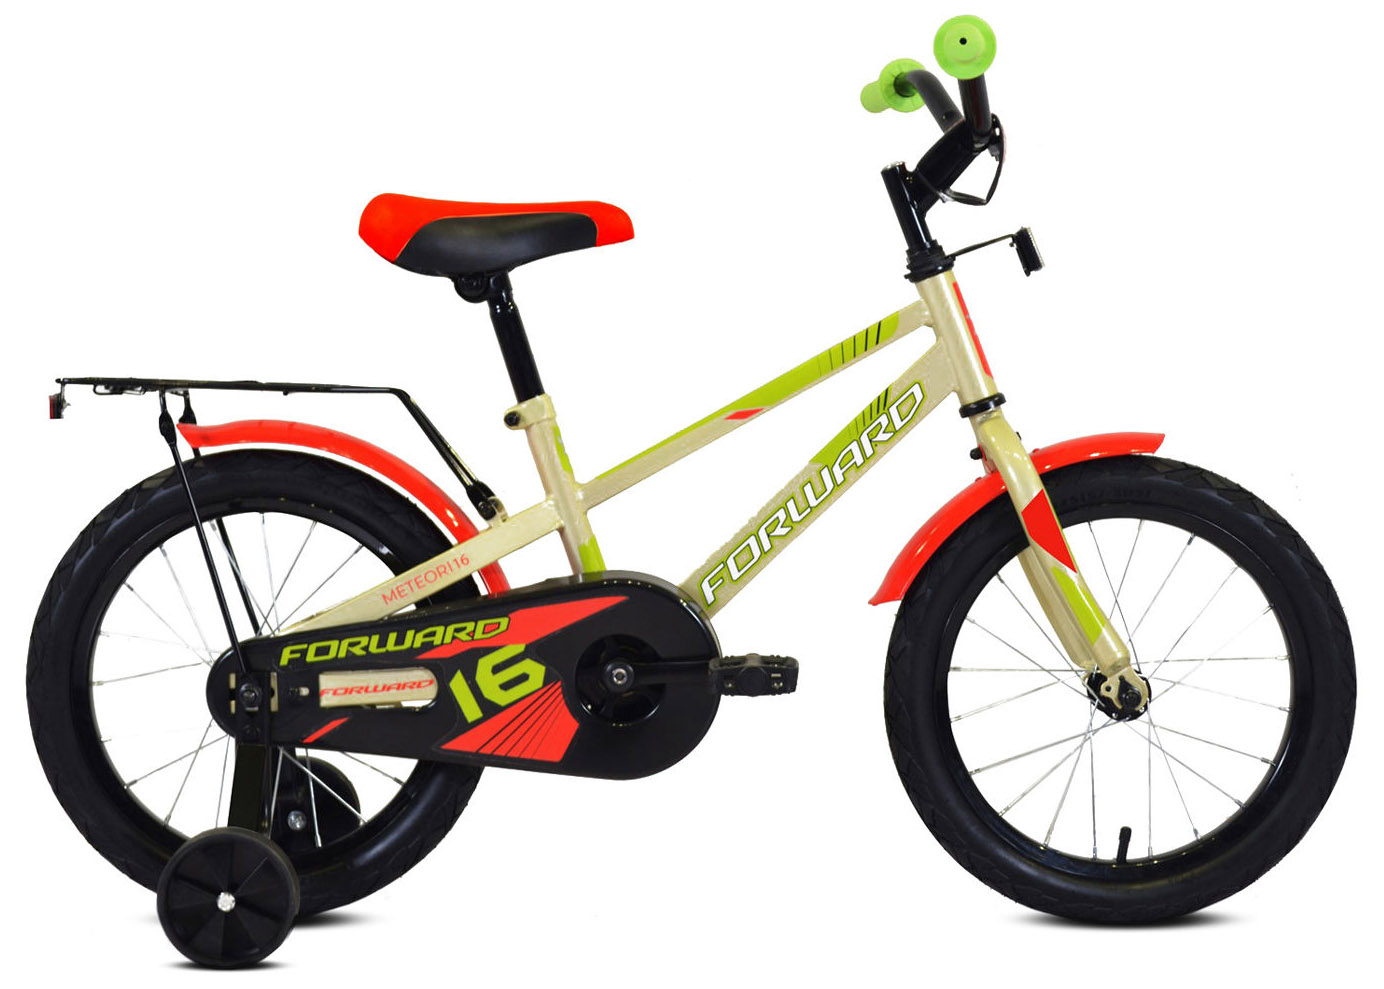  Велосипед трехколесный детский велосипед Forward Meteor 18 2020